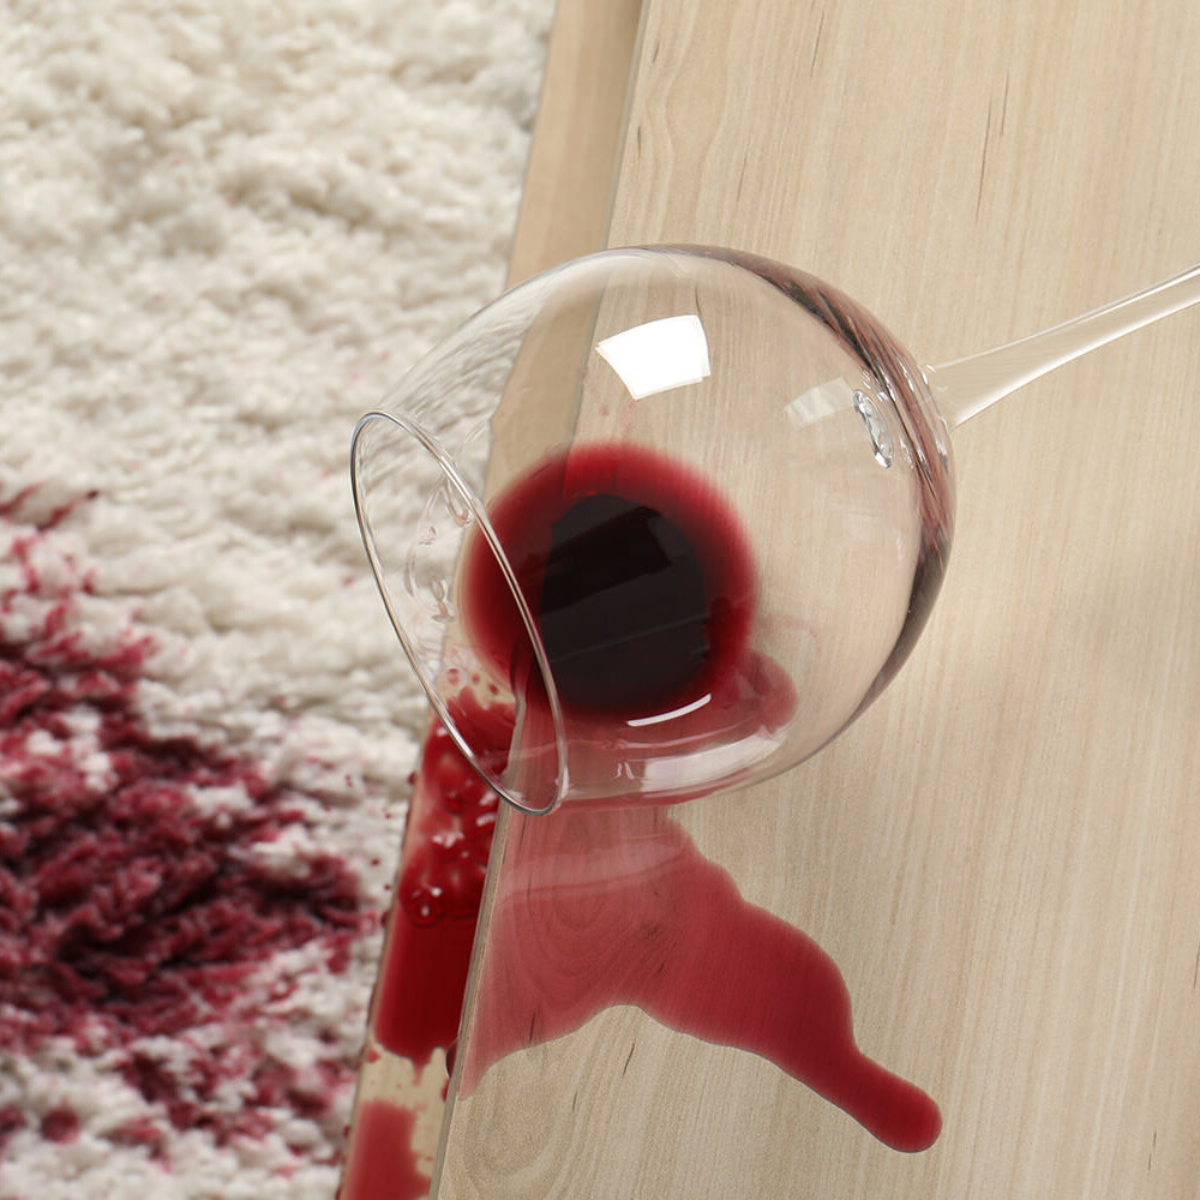 ein glas mit rotwein ist auf den tisch gefallen und der wein steht auf dem weißen teppich